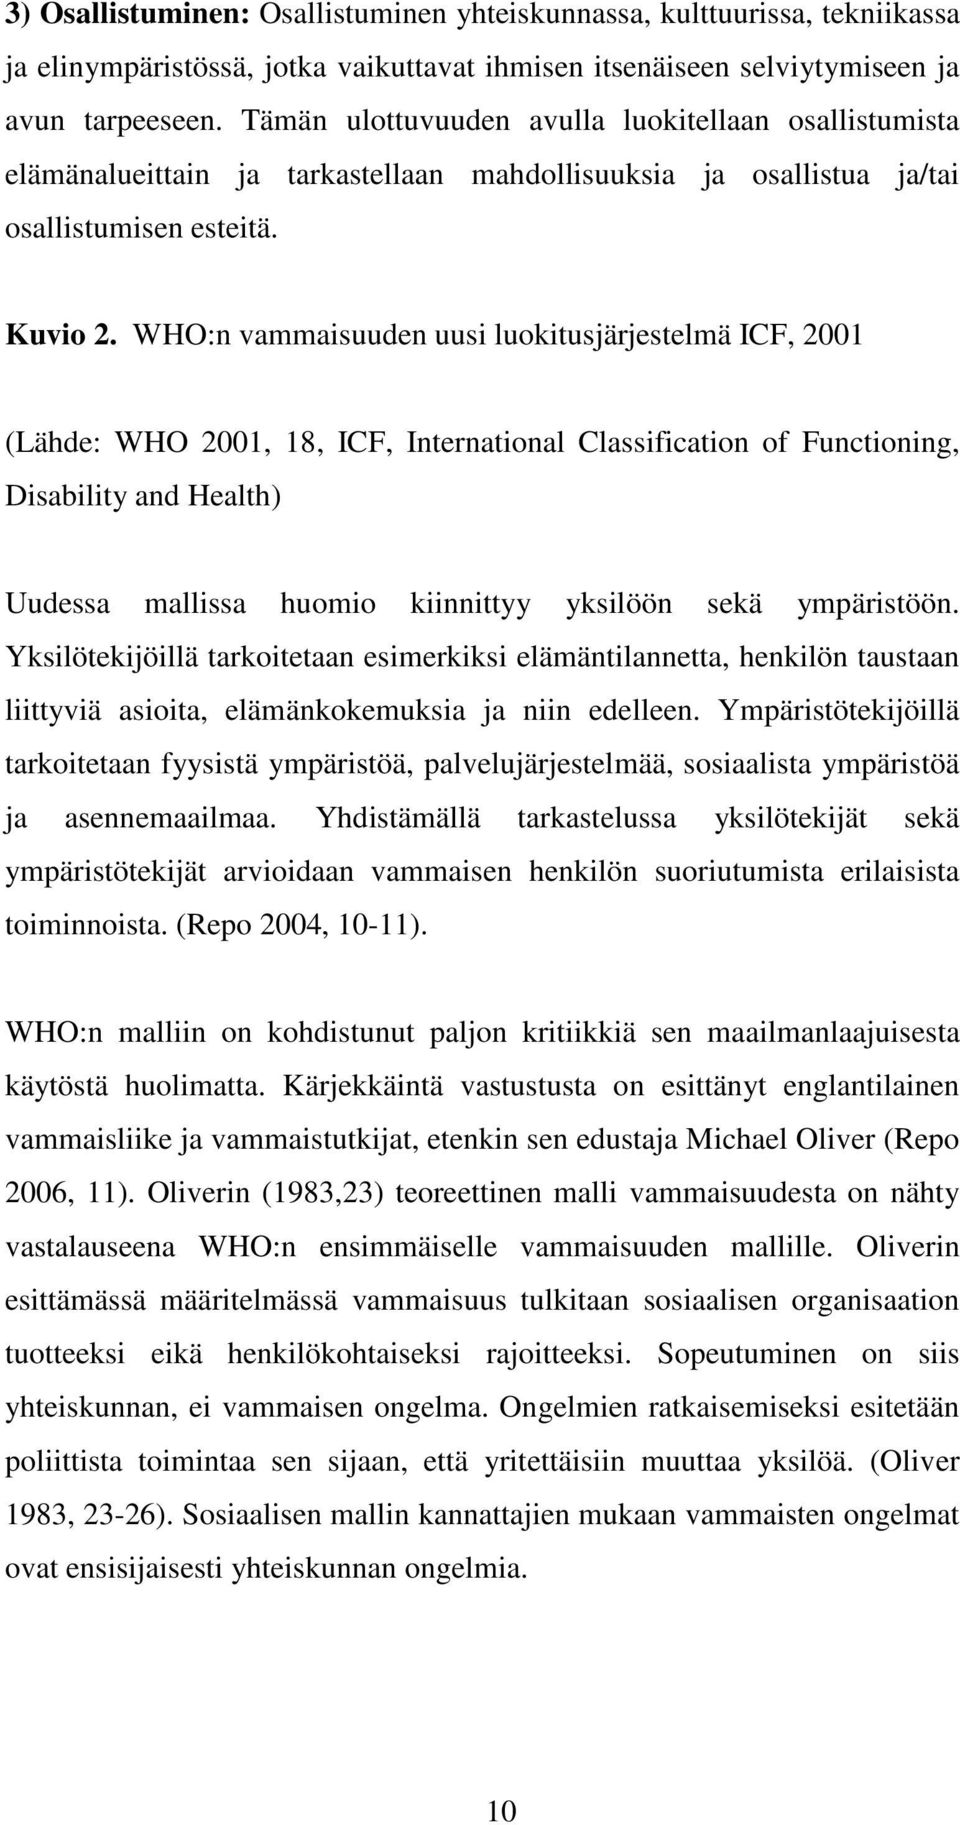 WHO:n vammaisuuden uusi luokitusjärjestelmä ICF, 2001 (Lähde: WHO 2001, 18, ICF, International Classification of Functioning, Disability and Health) Uudessa mallissa huomio kiinnittyy yksilöön sekä